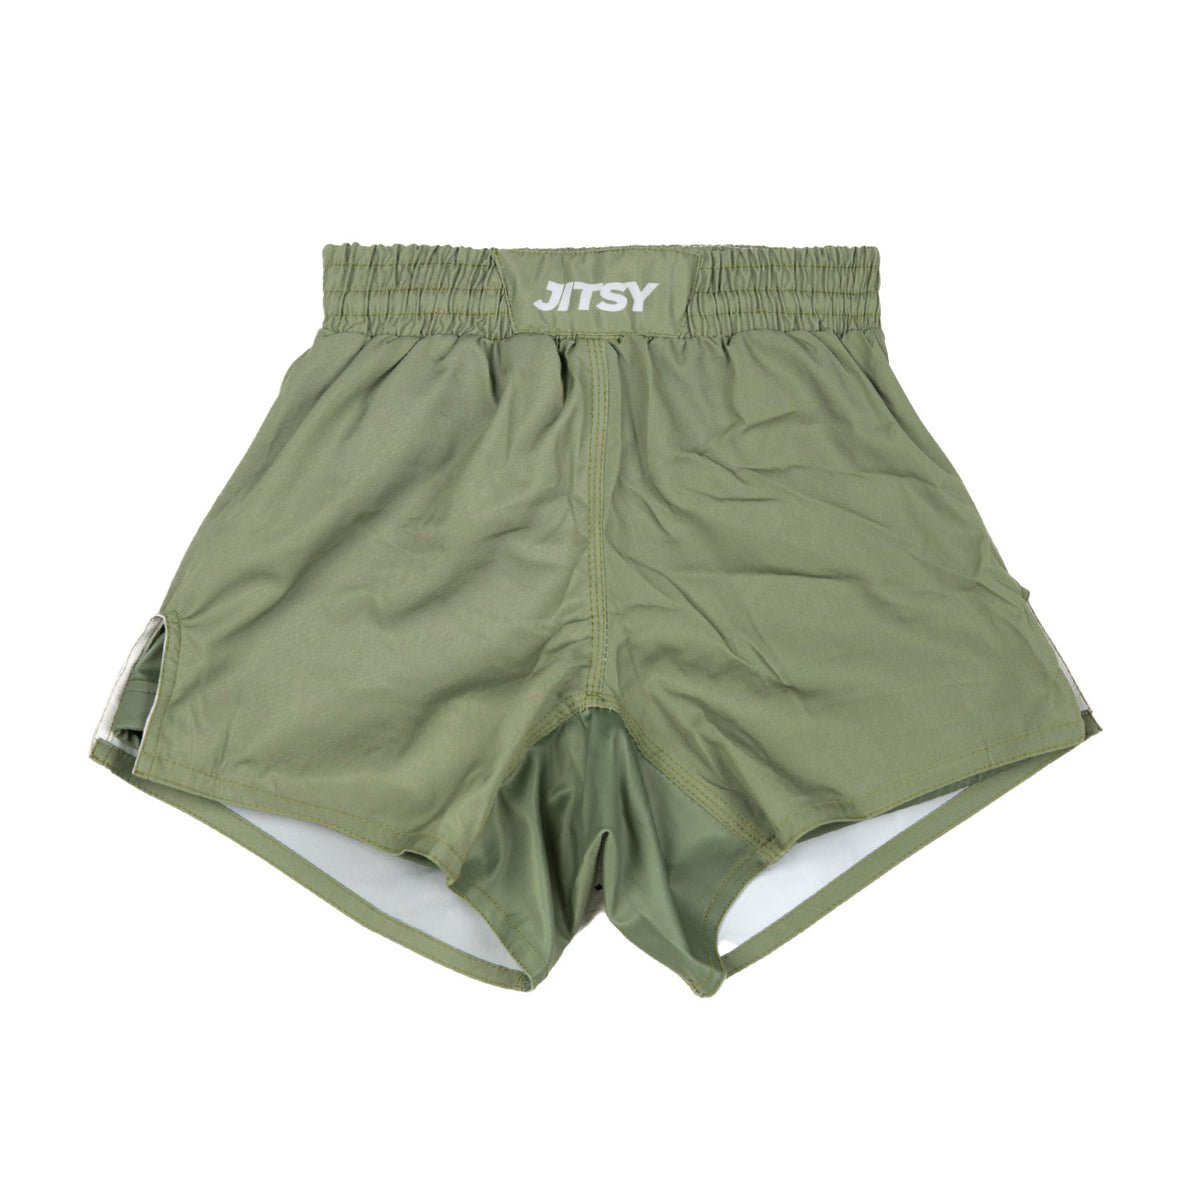 Shorts / Spats